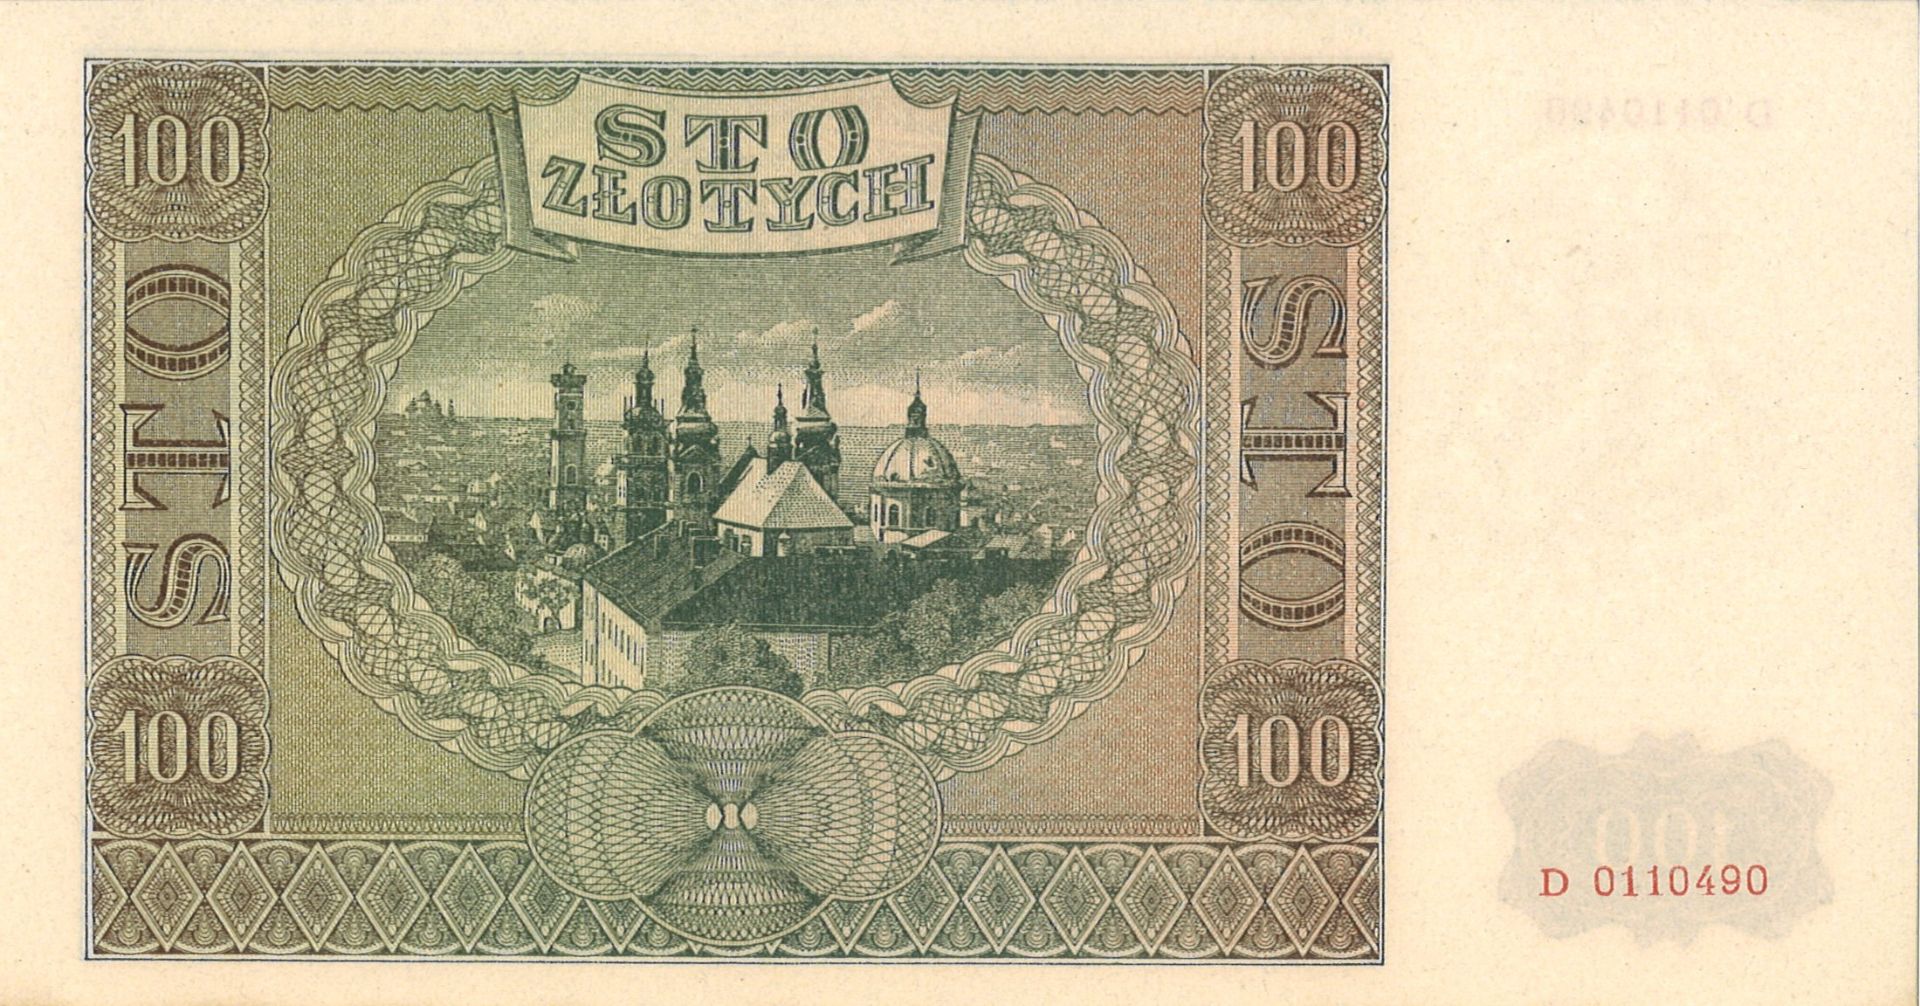 Polen, 100 Zloytch 1941, Pick # 103 unc